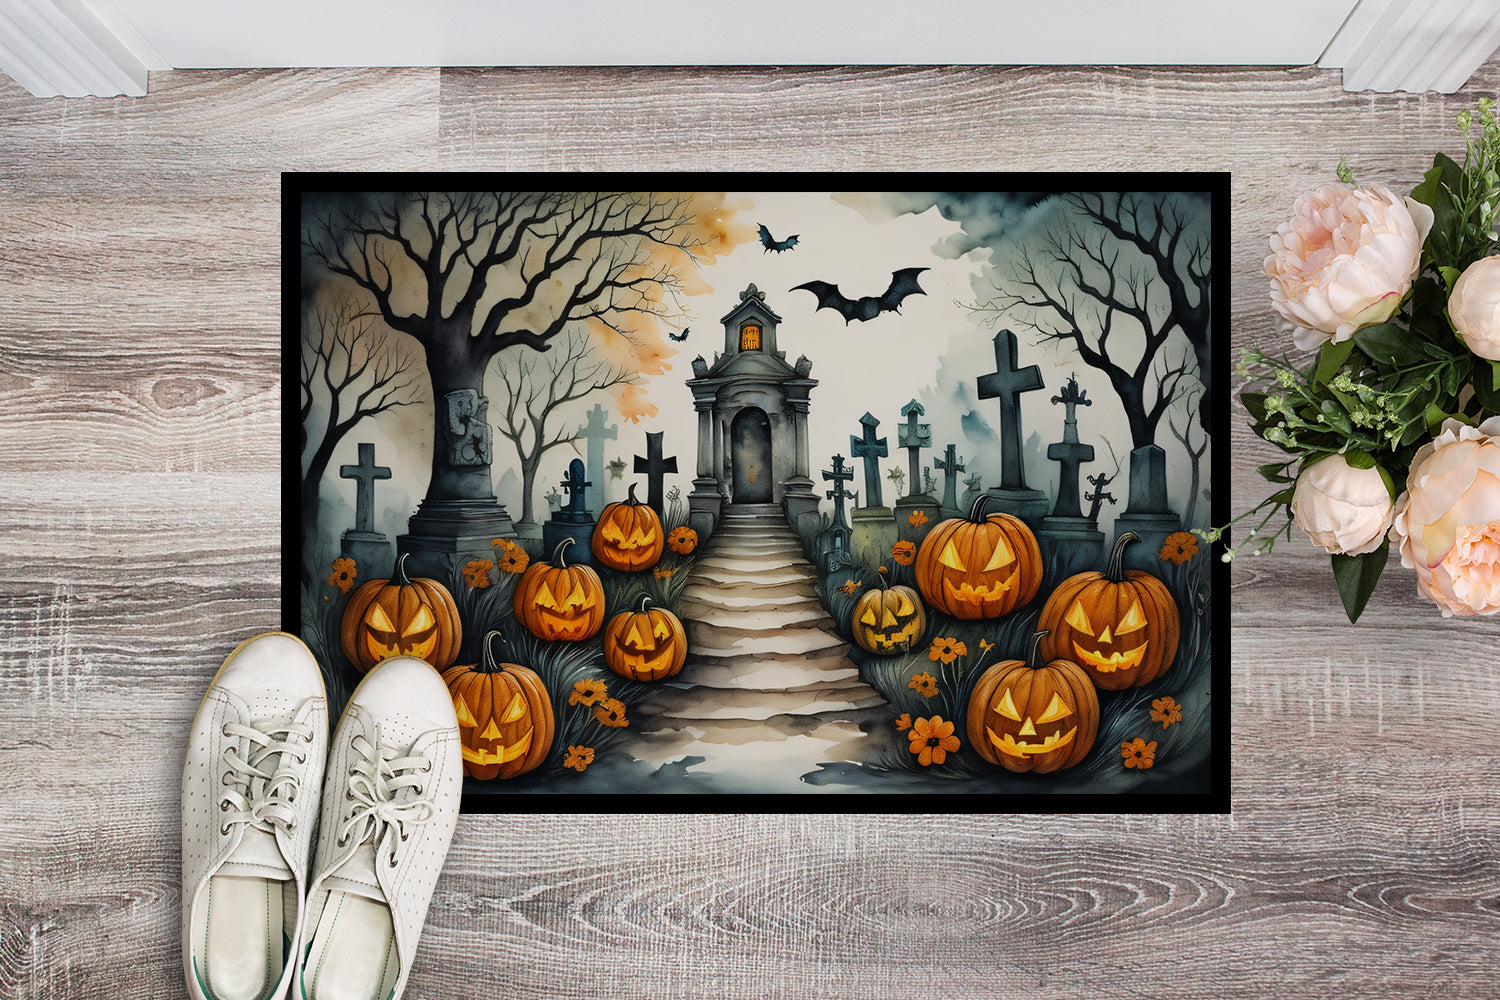 Buy this Marigold Spooky Halloween Indoor or Outdoor Mat 24x36